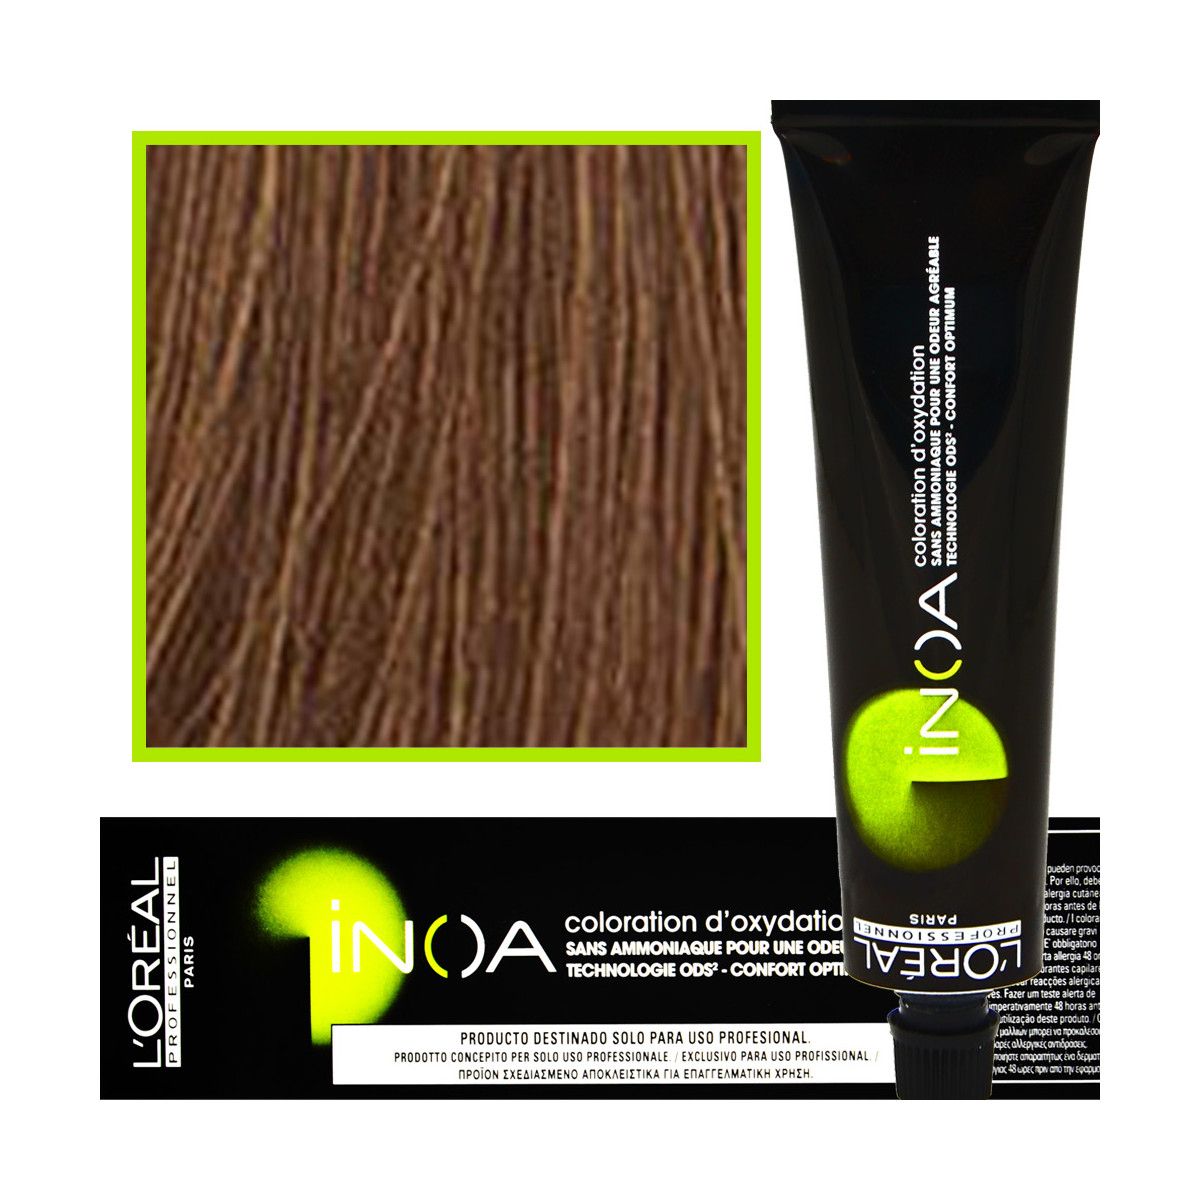 Loreal Inoa farba do włosów głęboki i trwały kolor dodatkowa ochrona włosa 60 ml 7.8 Blond Mokka